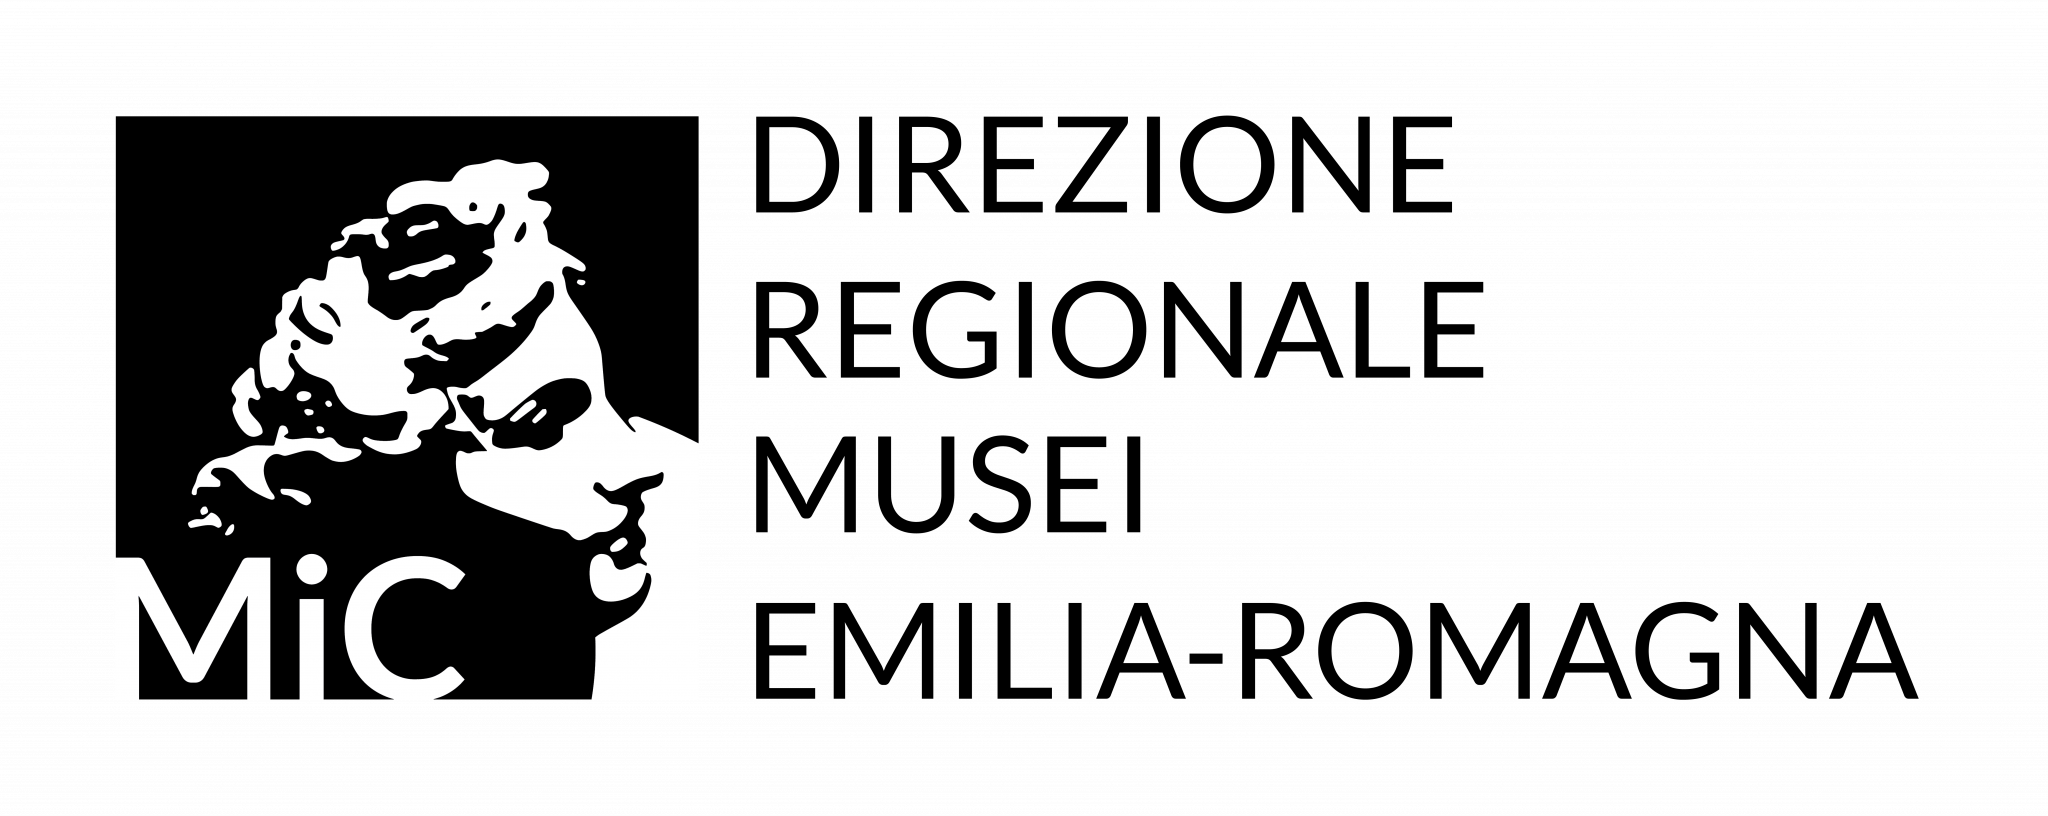 Logo Ministero dei Beni Culturali in bianco e nero, si legge: Direzione Regionale Musei Emilia - Romagna